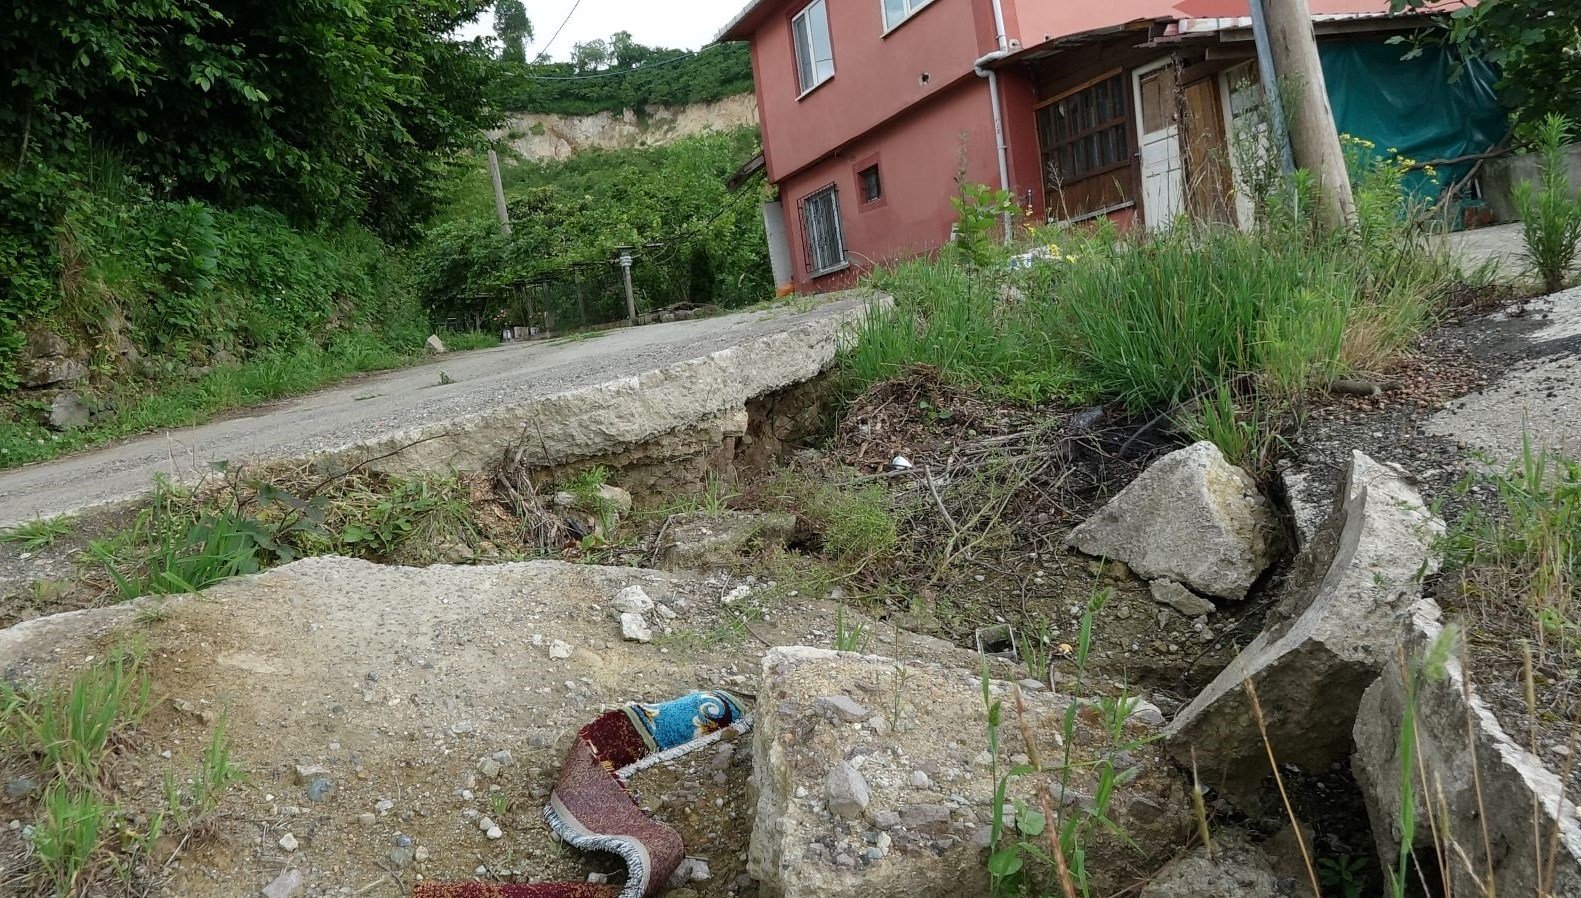 Afet bölgesi ilan edilen Trabzon’un bir mahallesi kayıyor